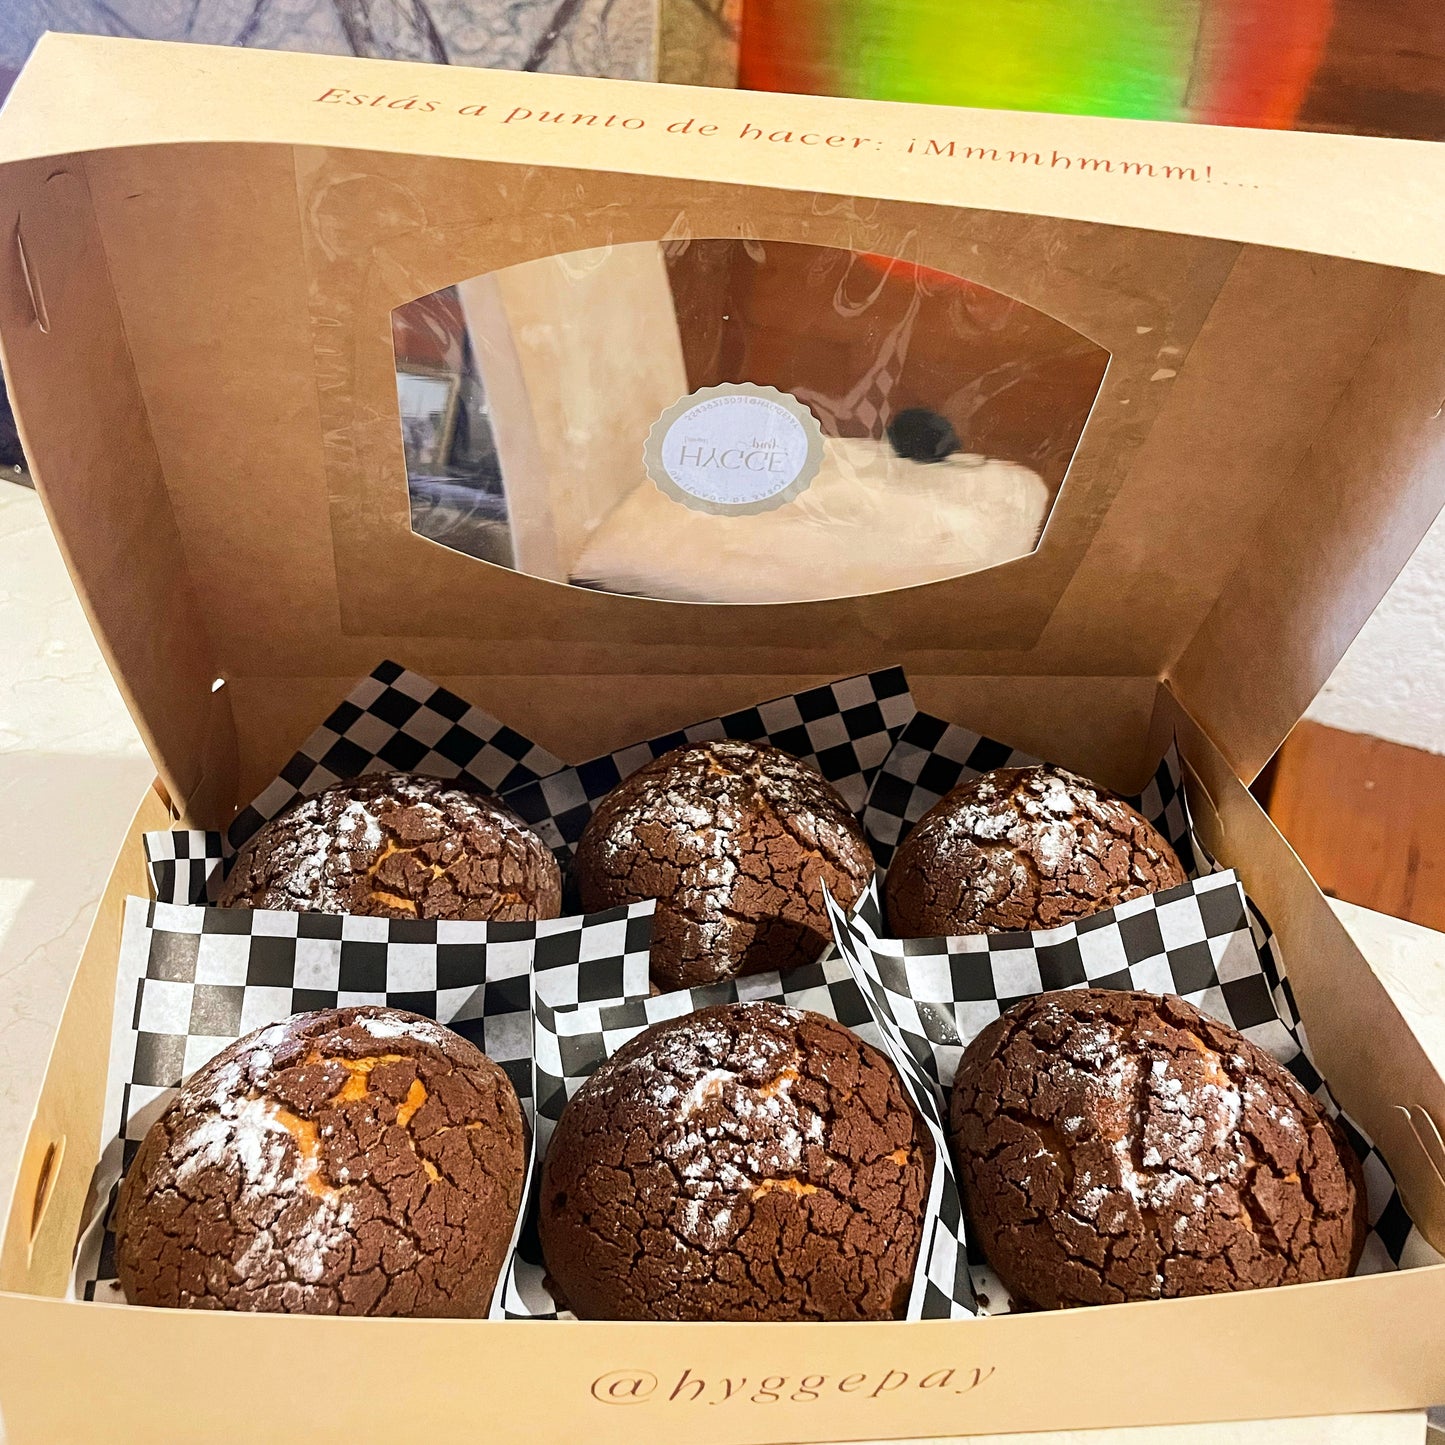 Caja de 6 conchas con costra de Chocolate Hershey's